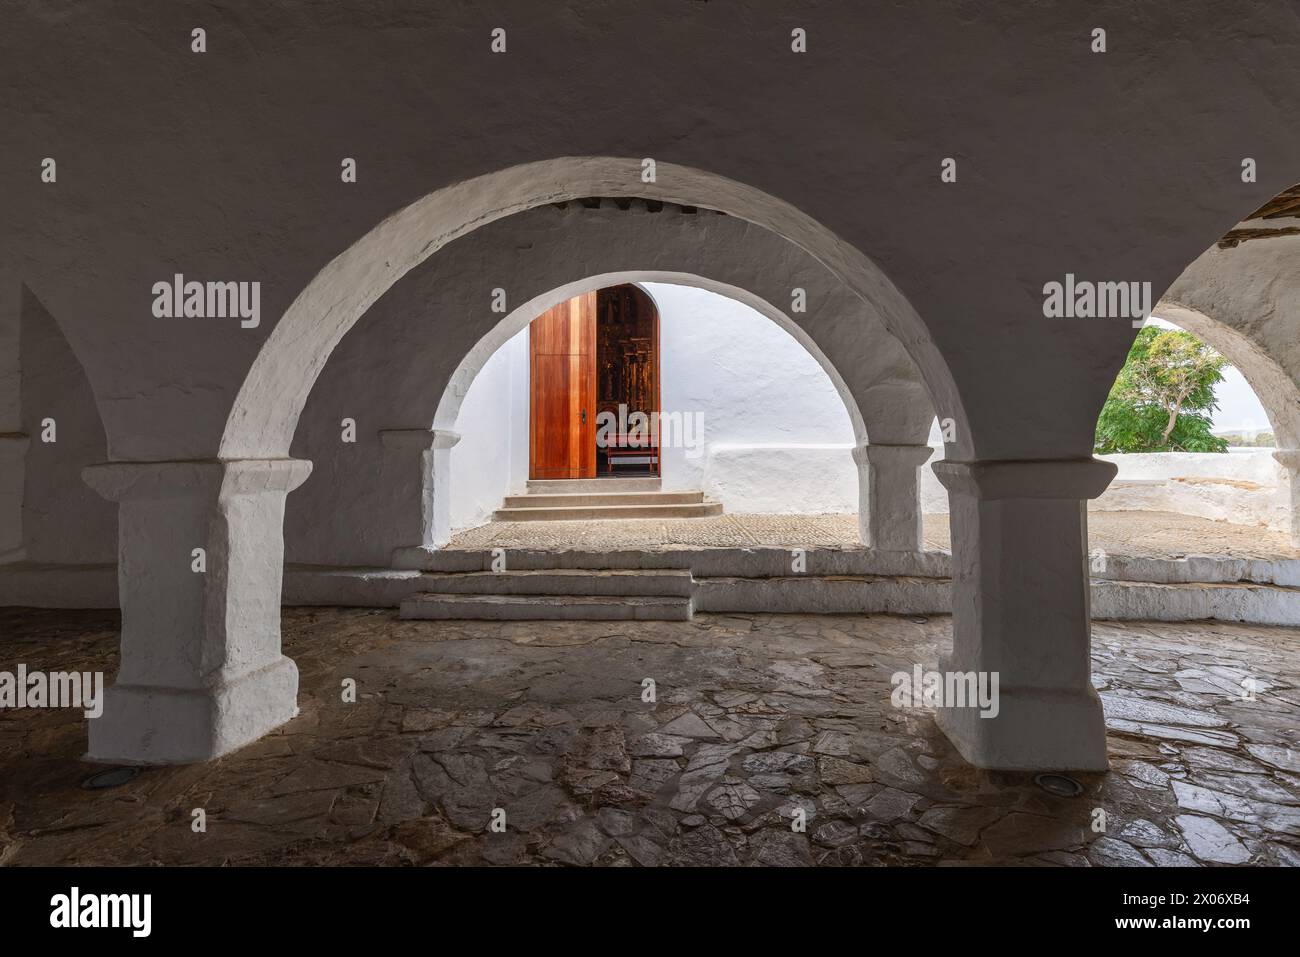 L'atmosfera serena del cortile coperto della chiesa di Puig de Missa a Santa Eulalia, Ibiza, con i suoi archi bianchi che incorniciano una vista sulla porta di legno Foto Stock